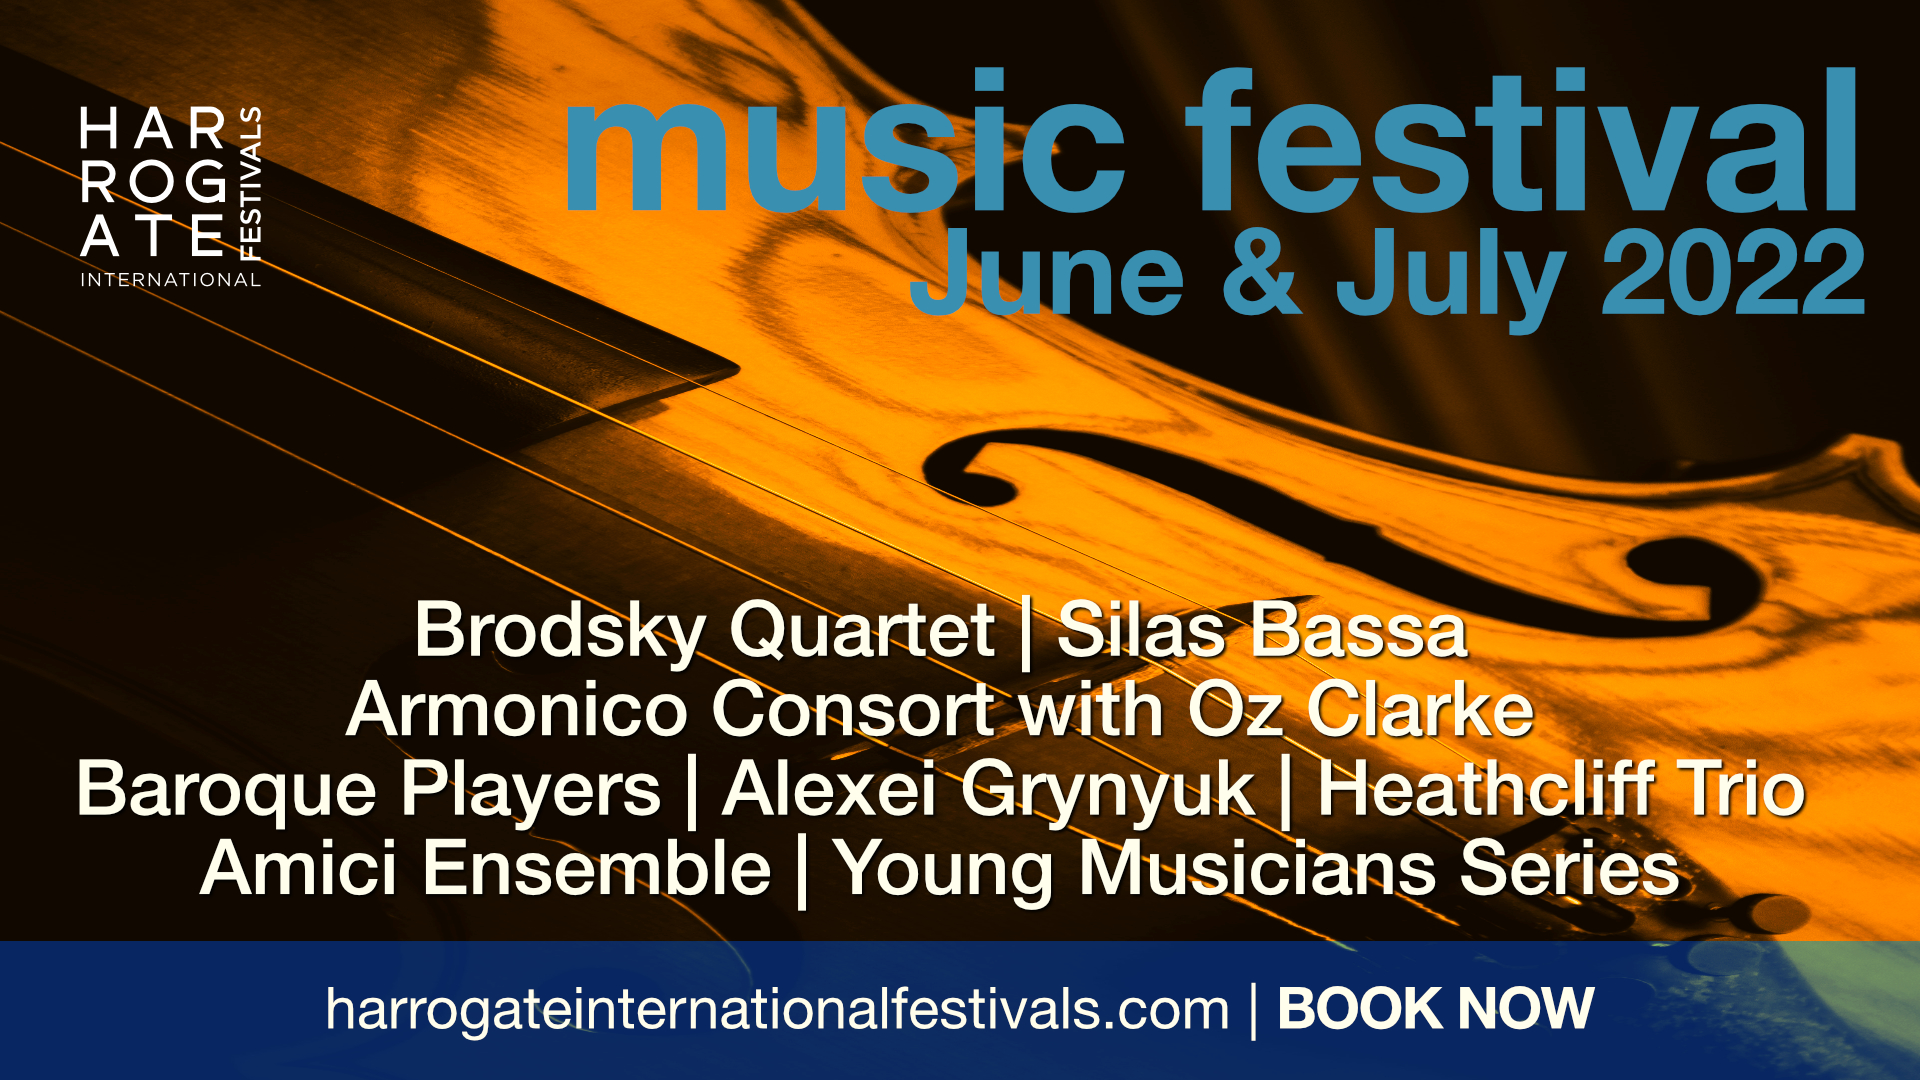 Harrogate Music Festival June - July 2022